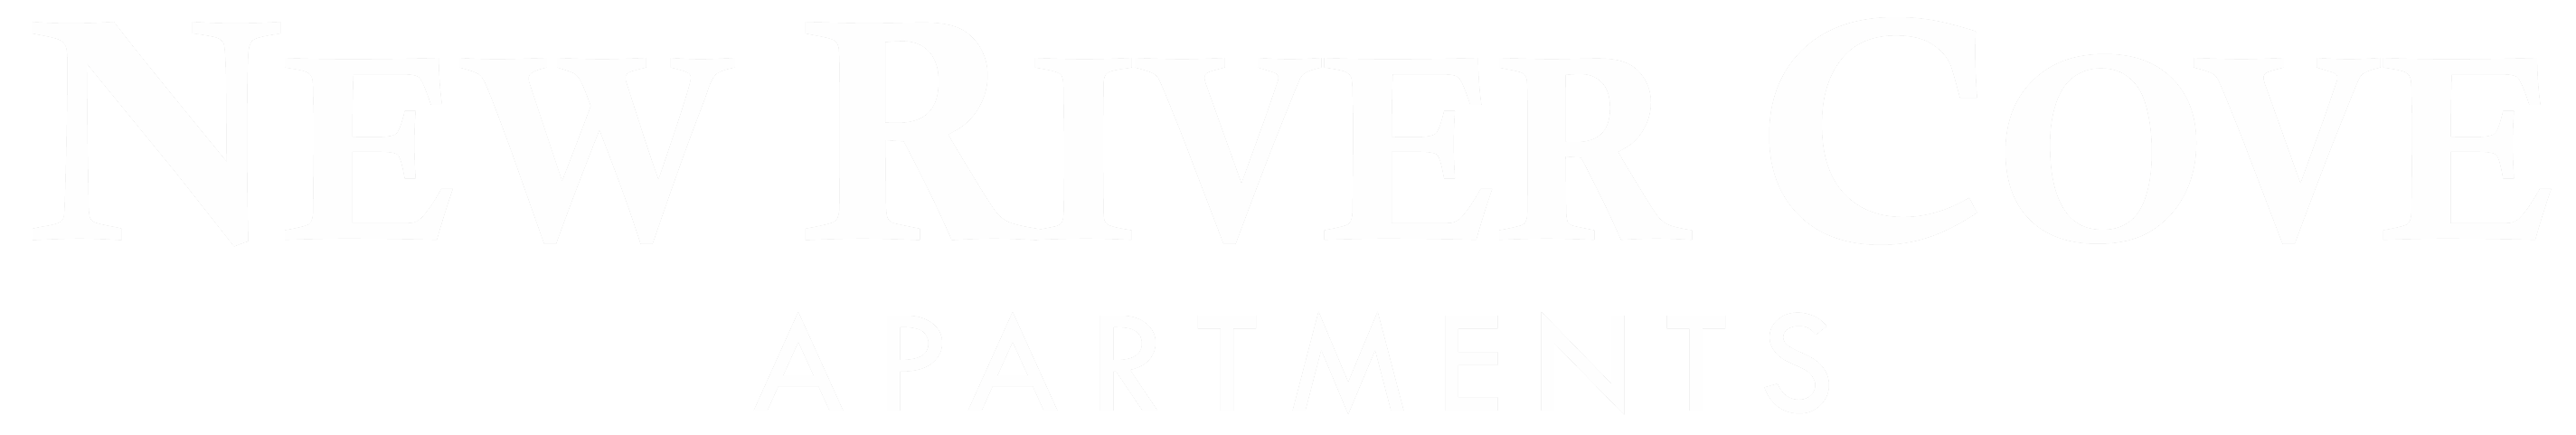 New River Cove logo